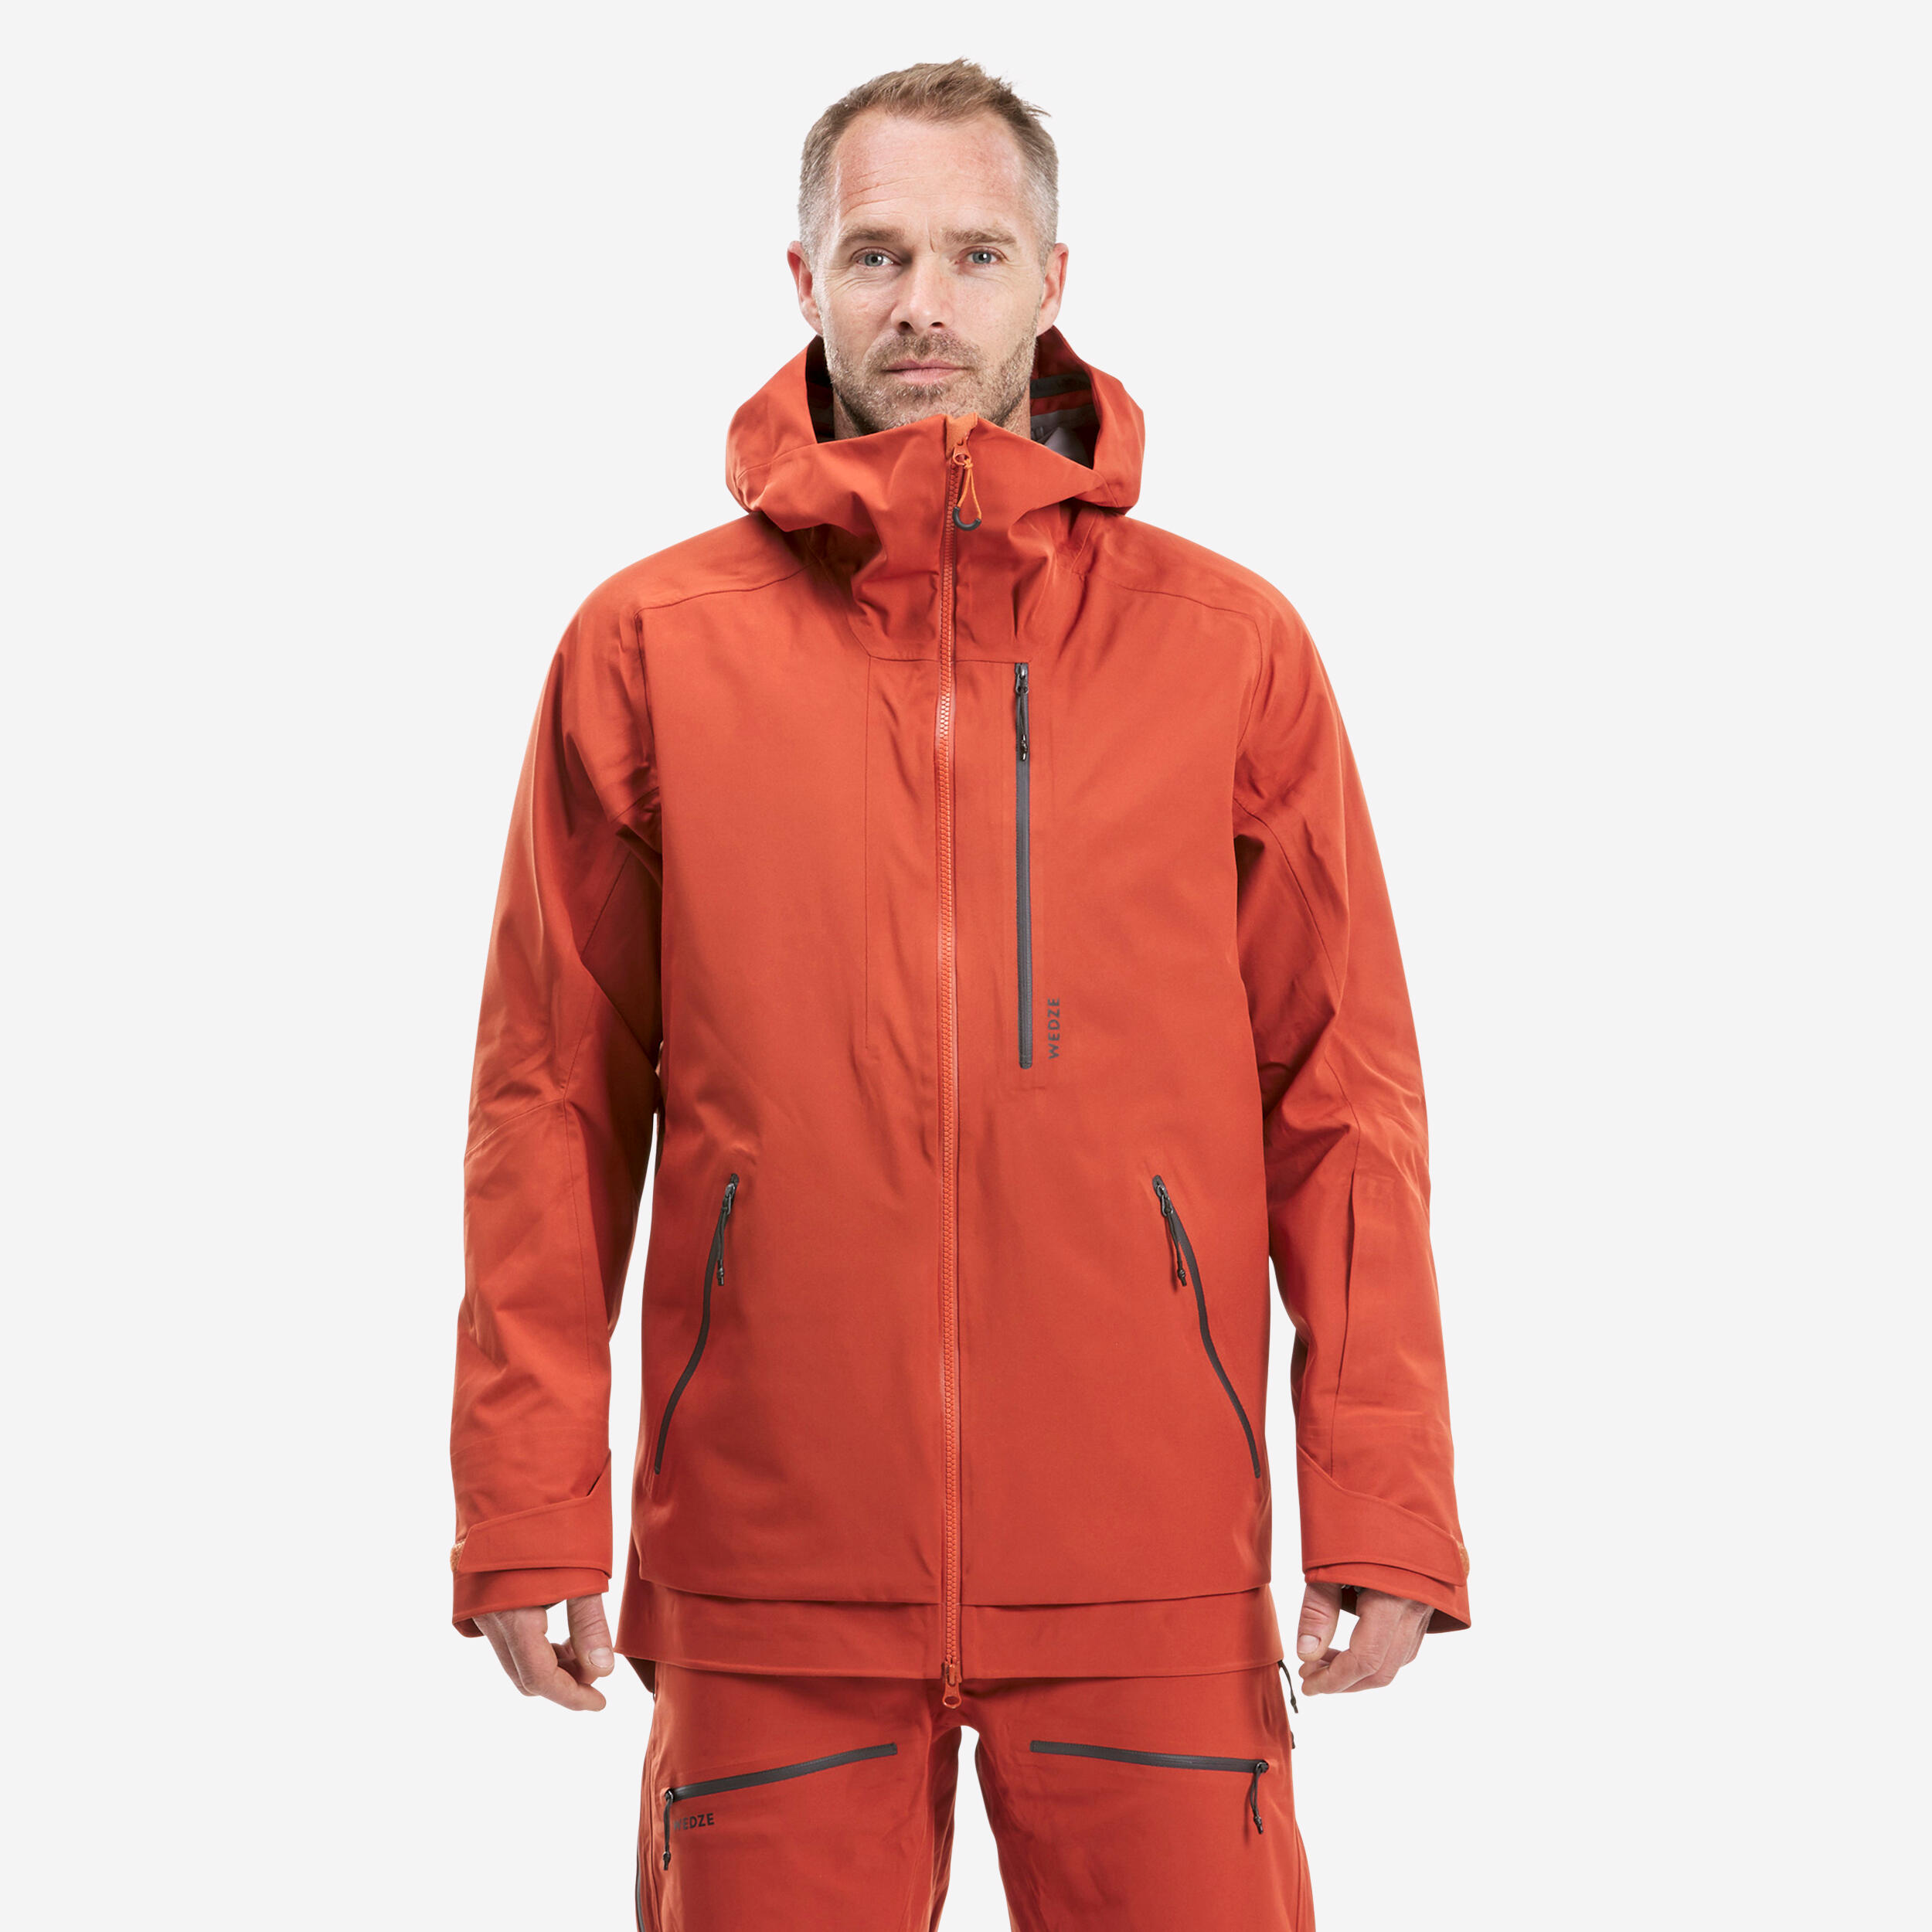 Men's Ski Jacket - FR500 - Terracotta 1/16